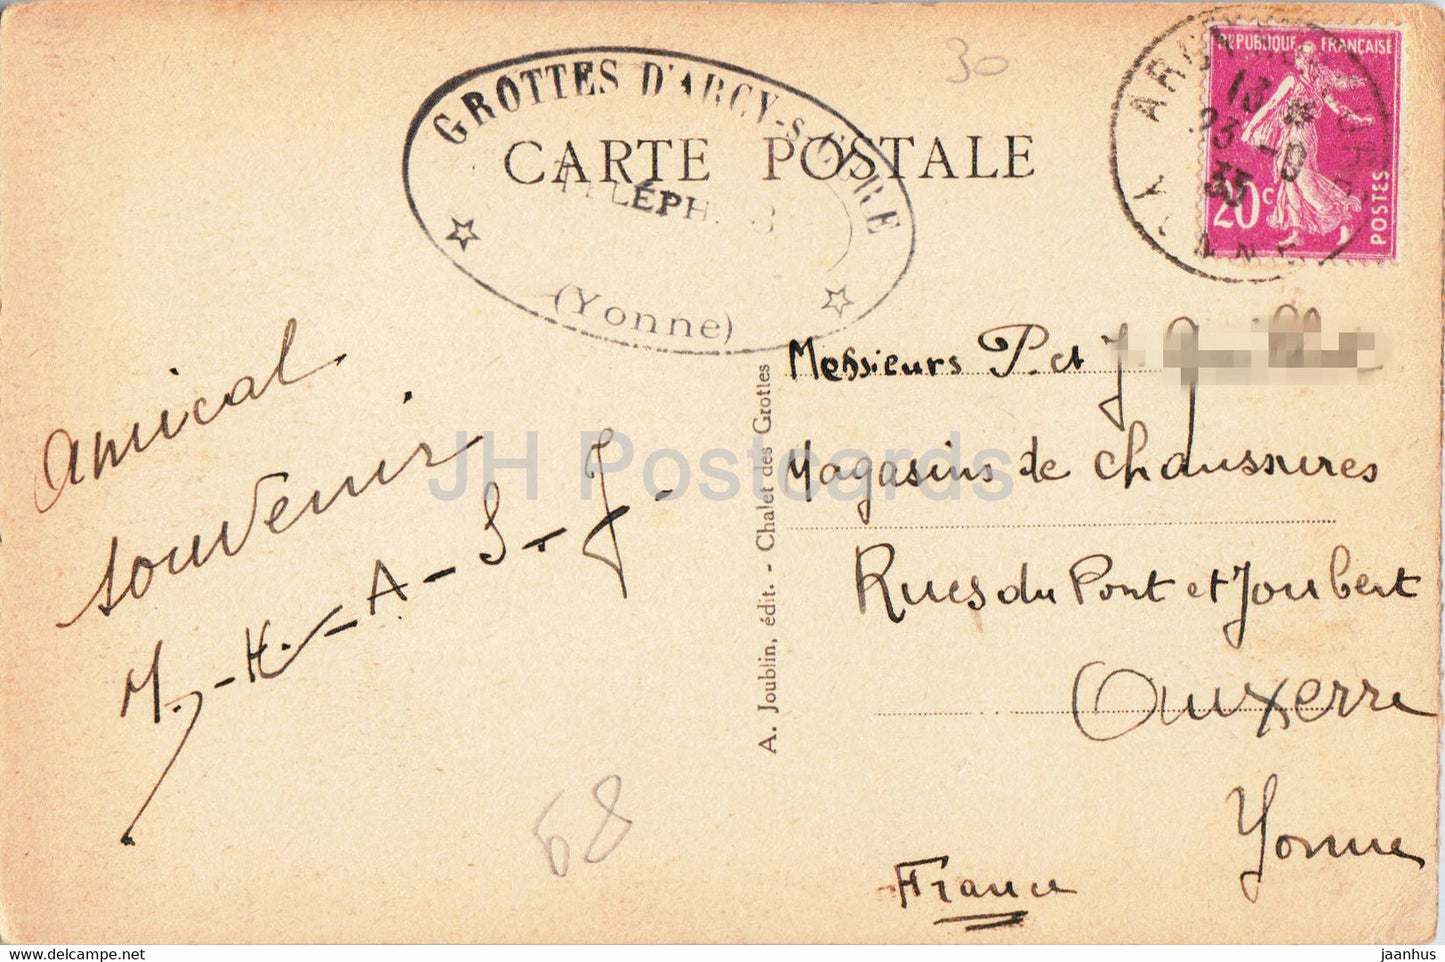 Grottes d'Arcy sur Cure - Un coin de la salle du chaos - 19 - old postcard - 1933 - France - used